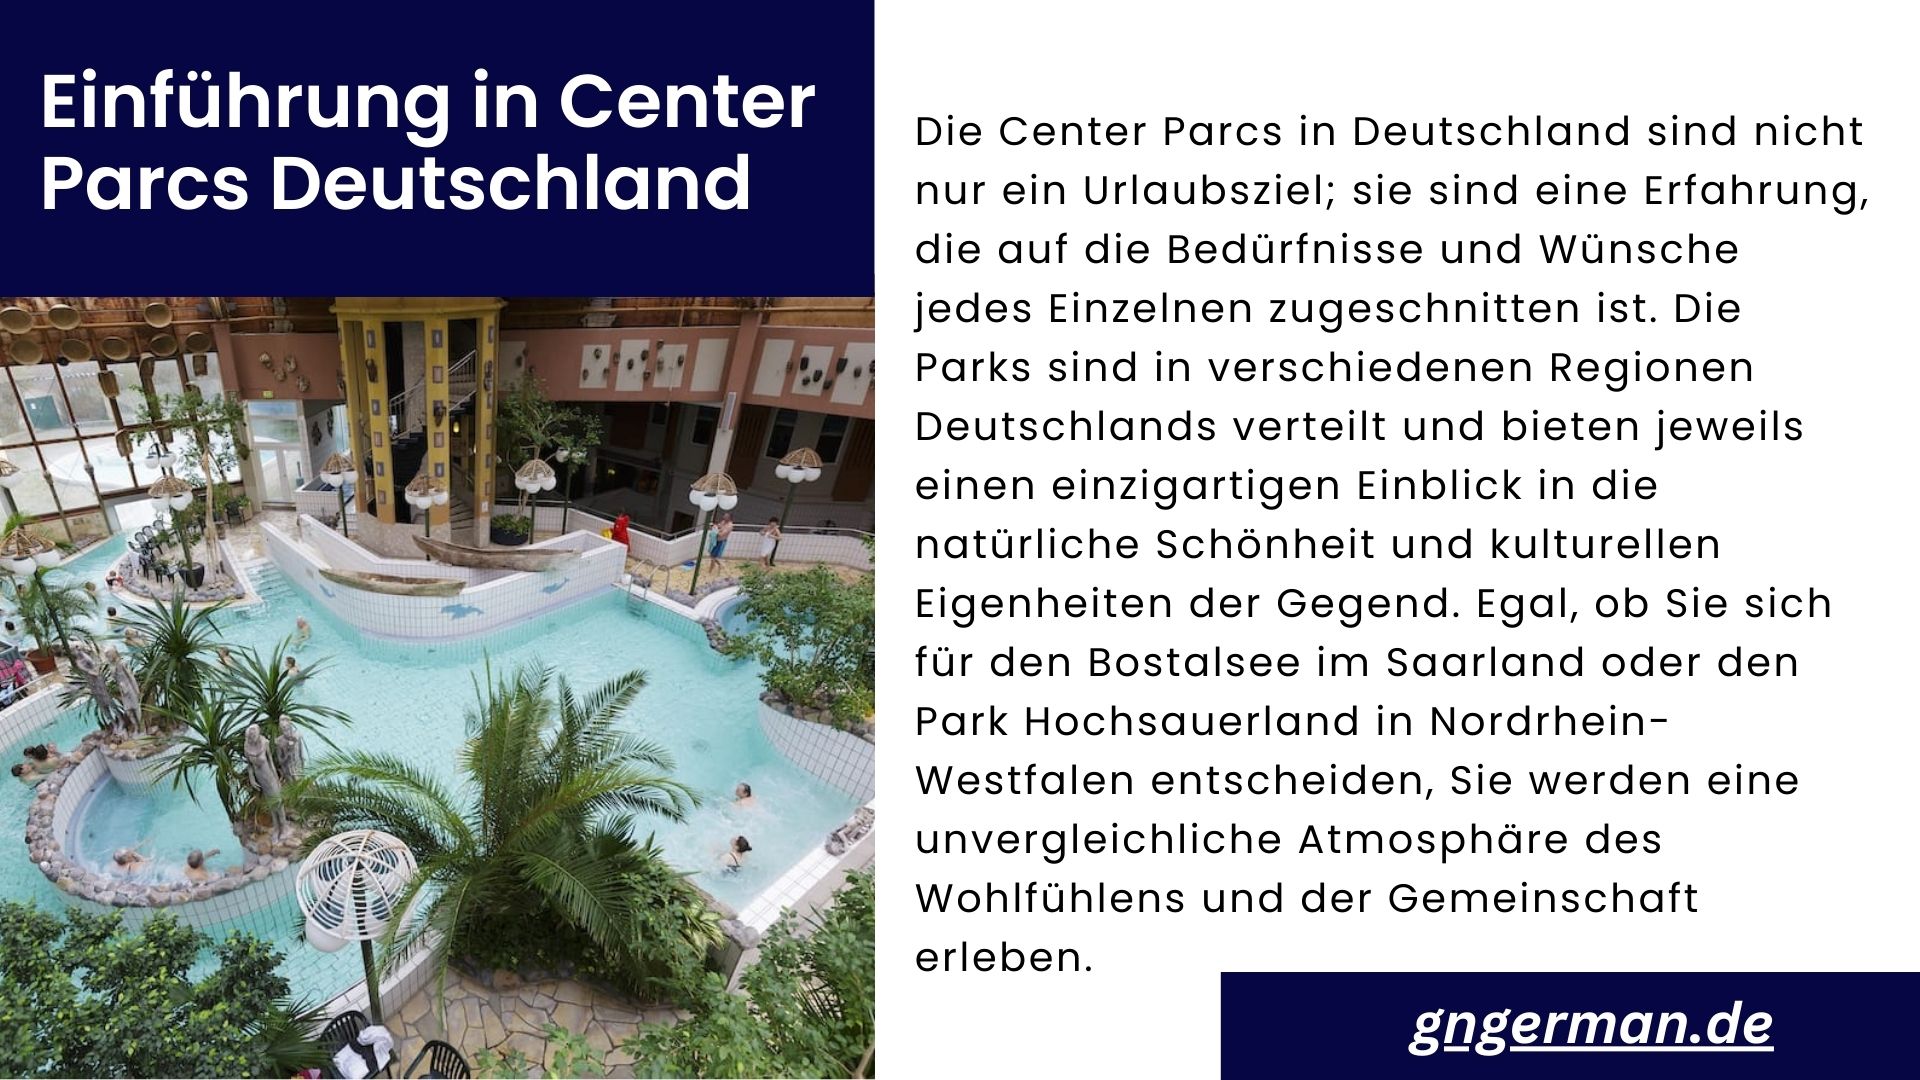 Center Parcs in Deutschland